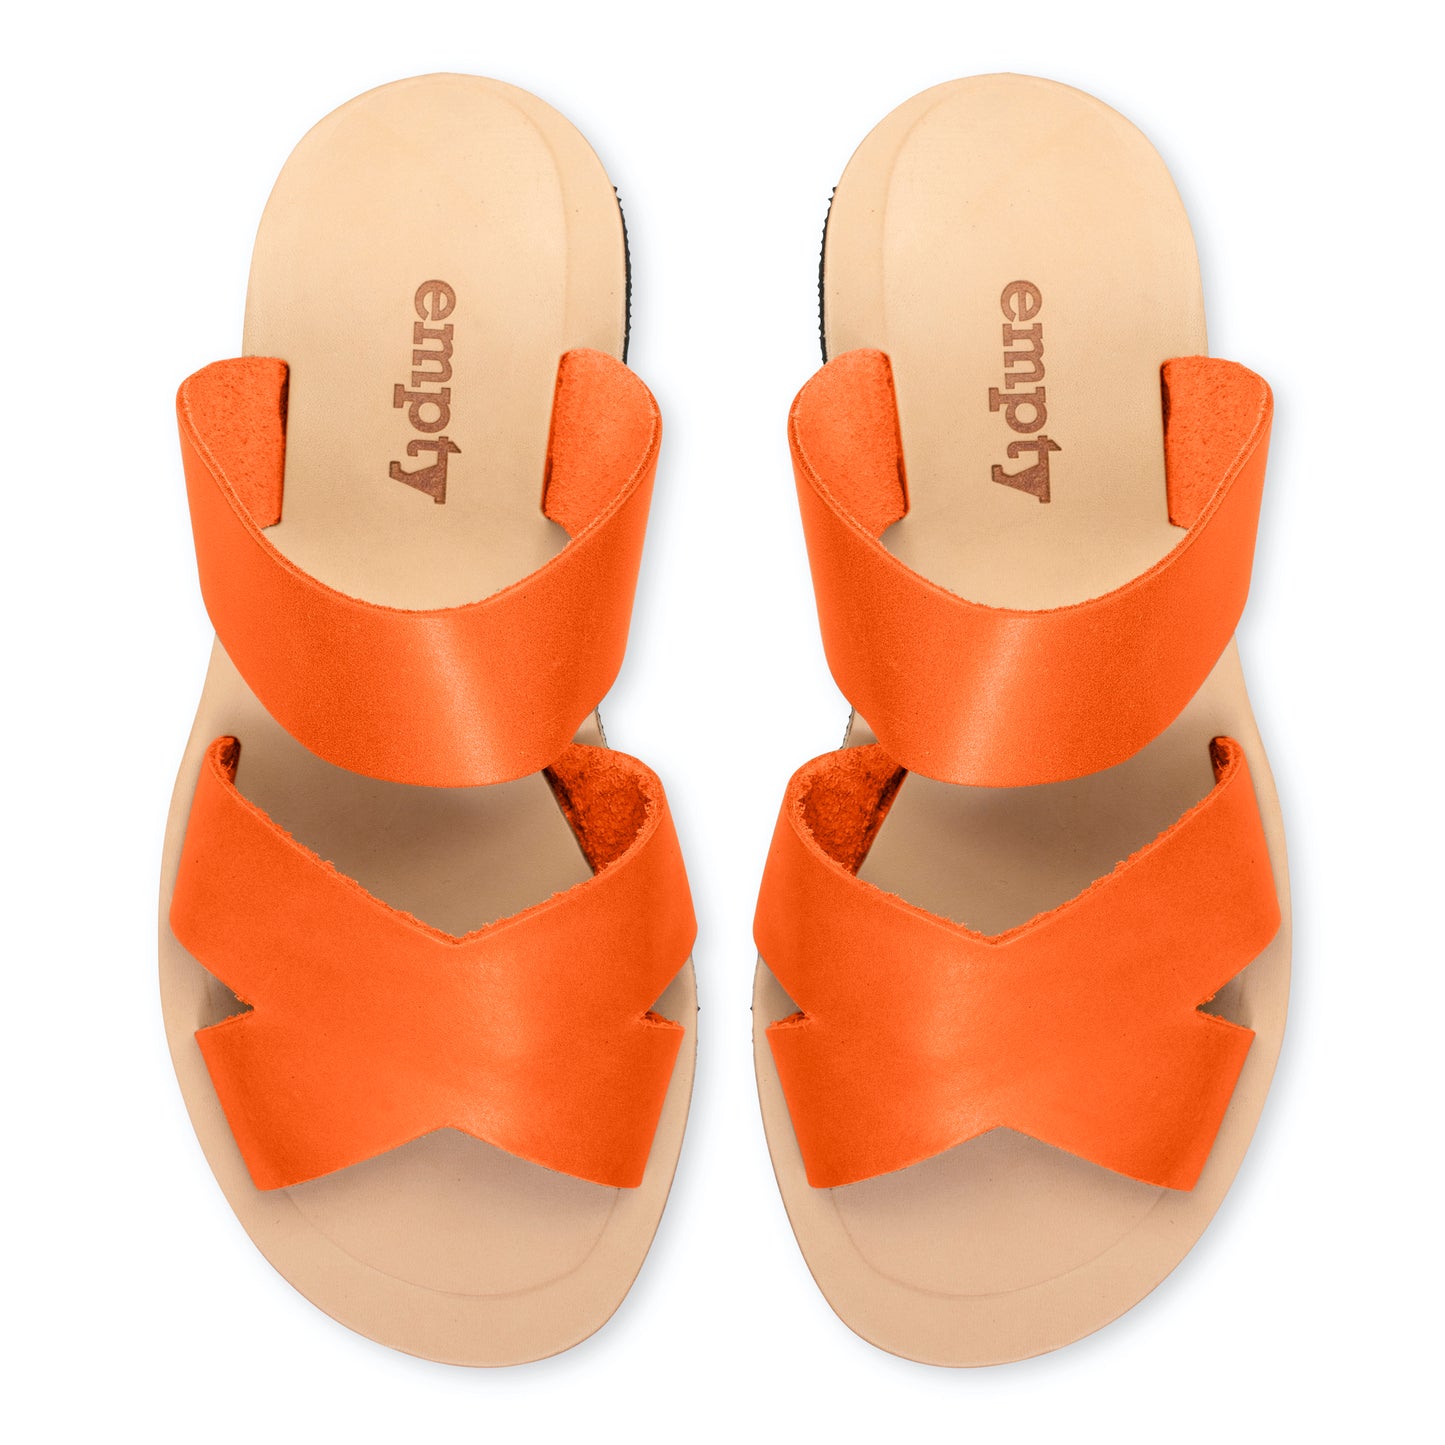 Mabel Leather Sandal - Orange